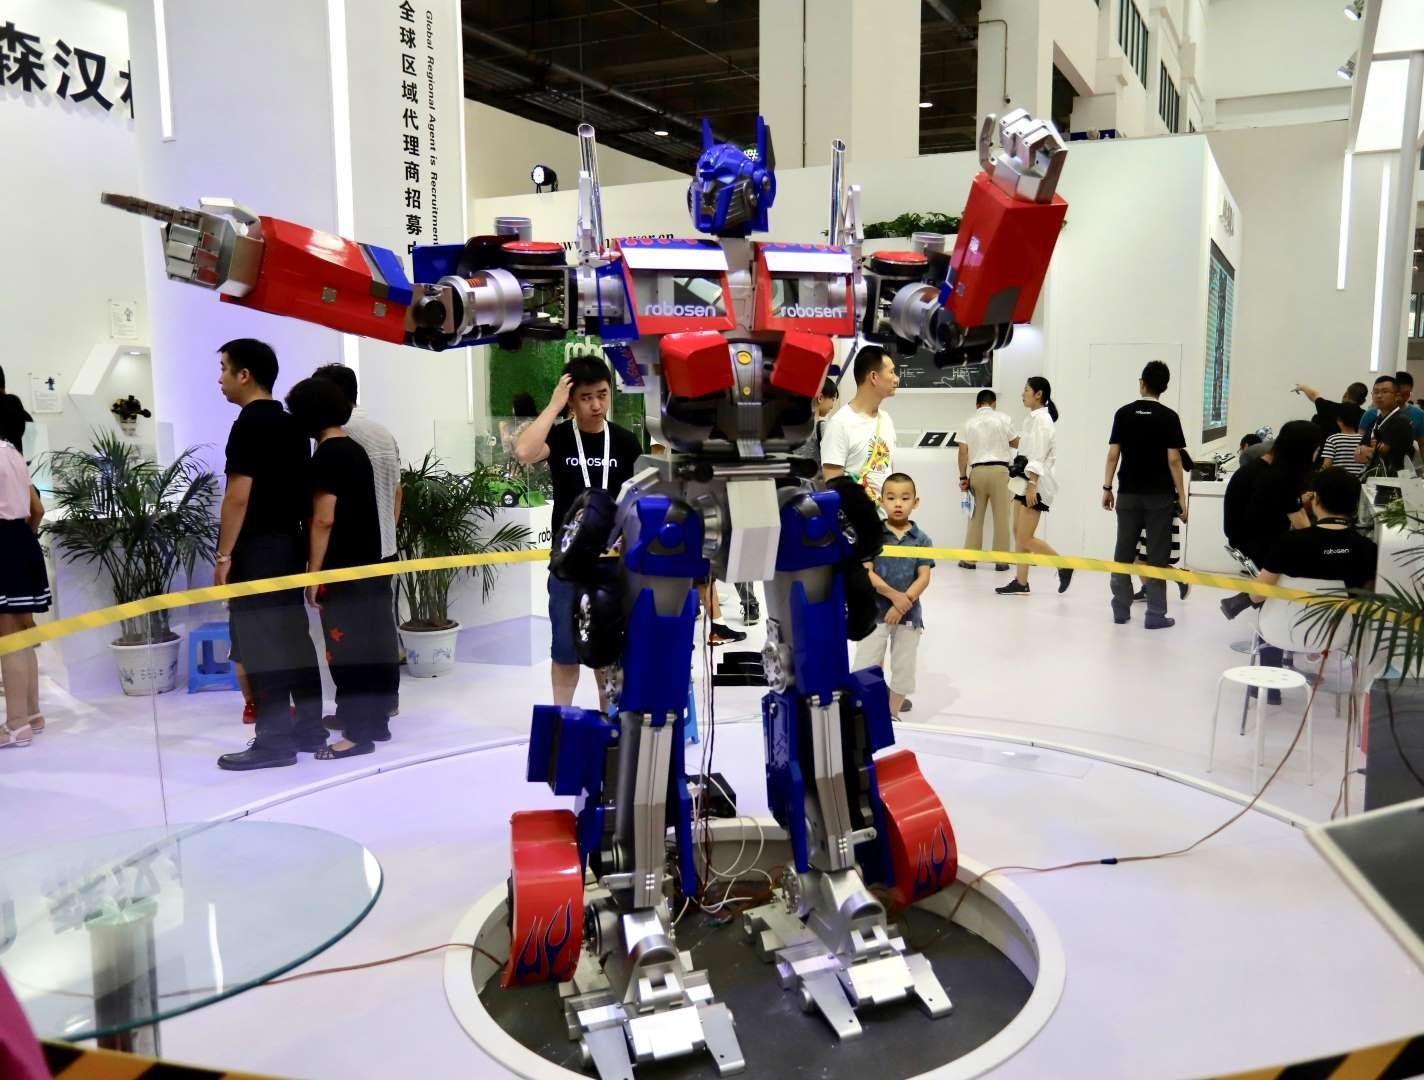 تصاویر/ کنفرانس جهانی ربات ۲۰۱۸ در پکن